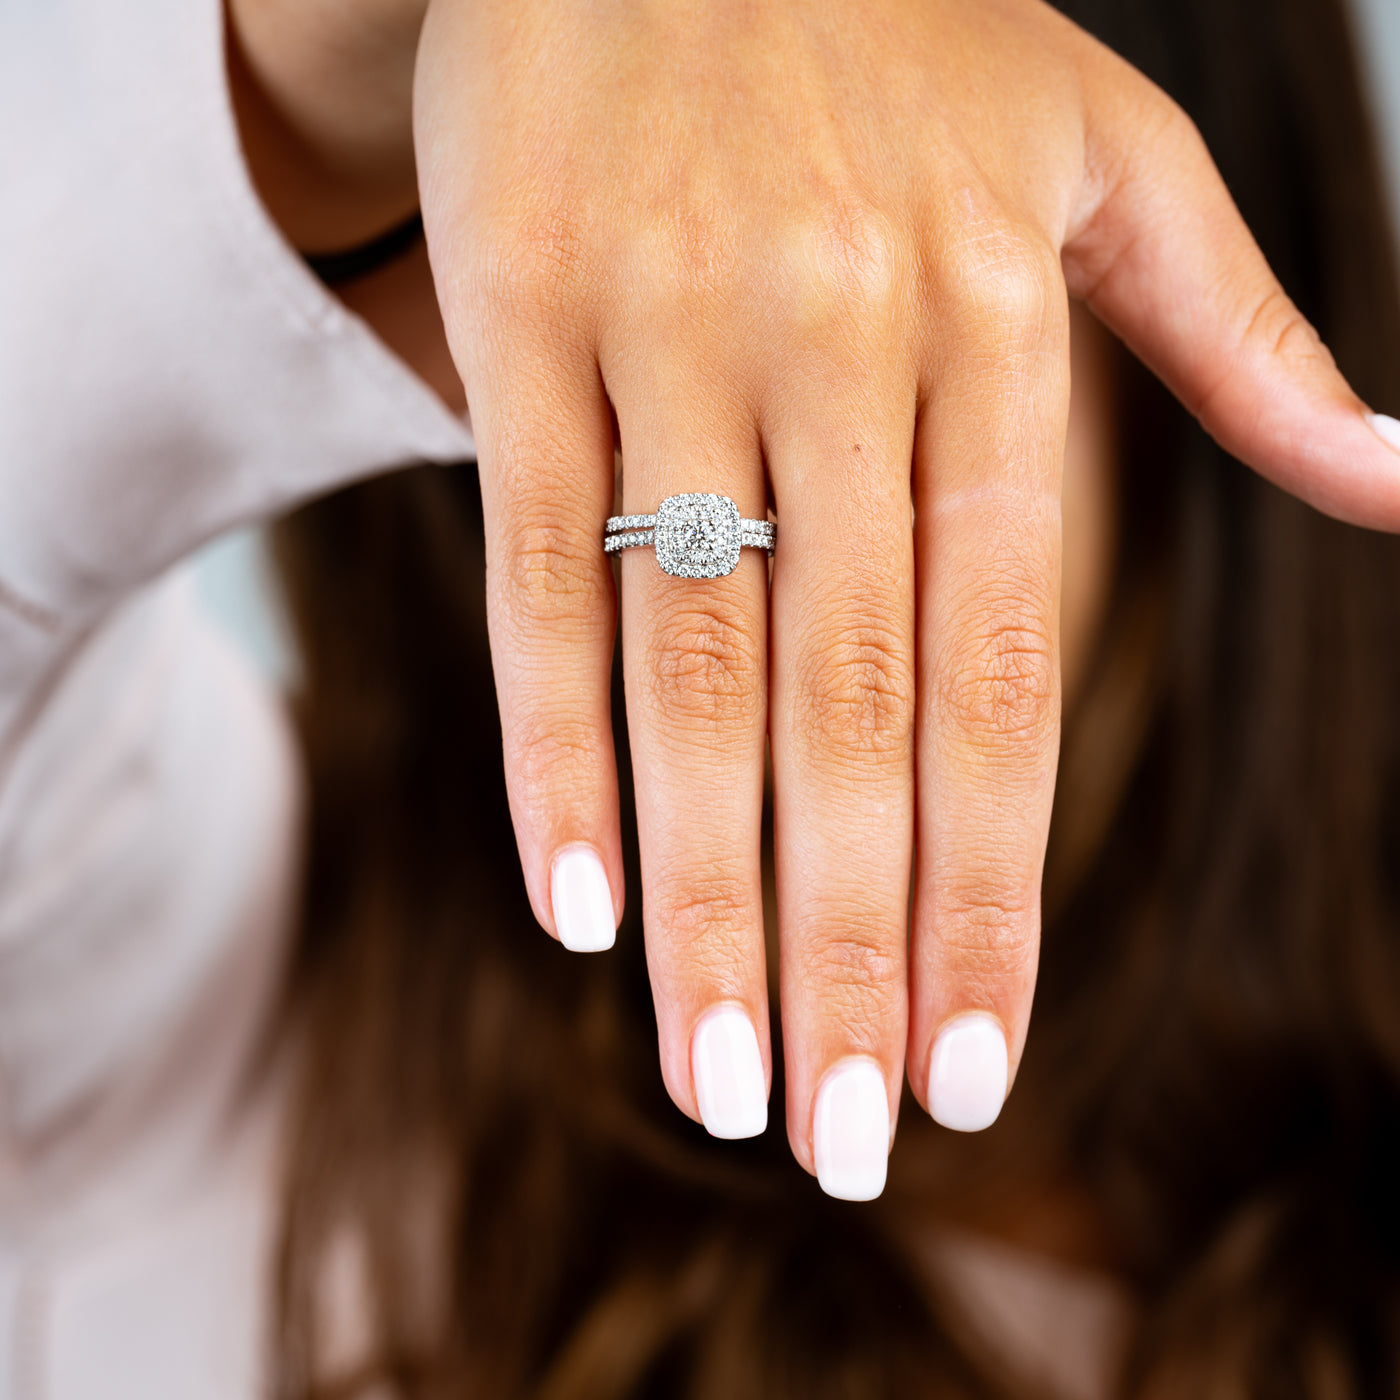 Cushion Double Halo Diamond Engagement Ring